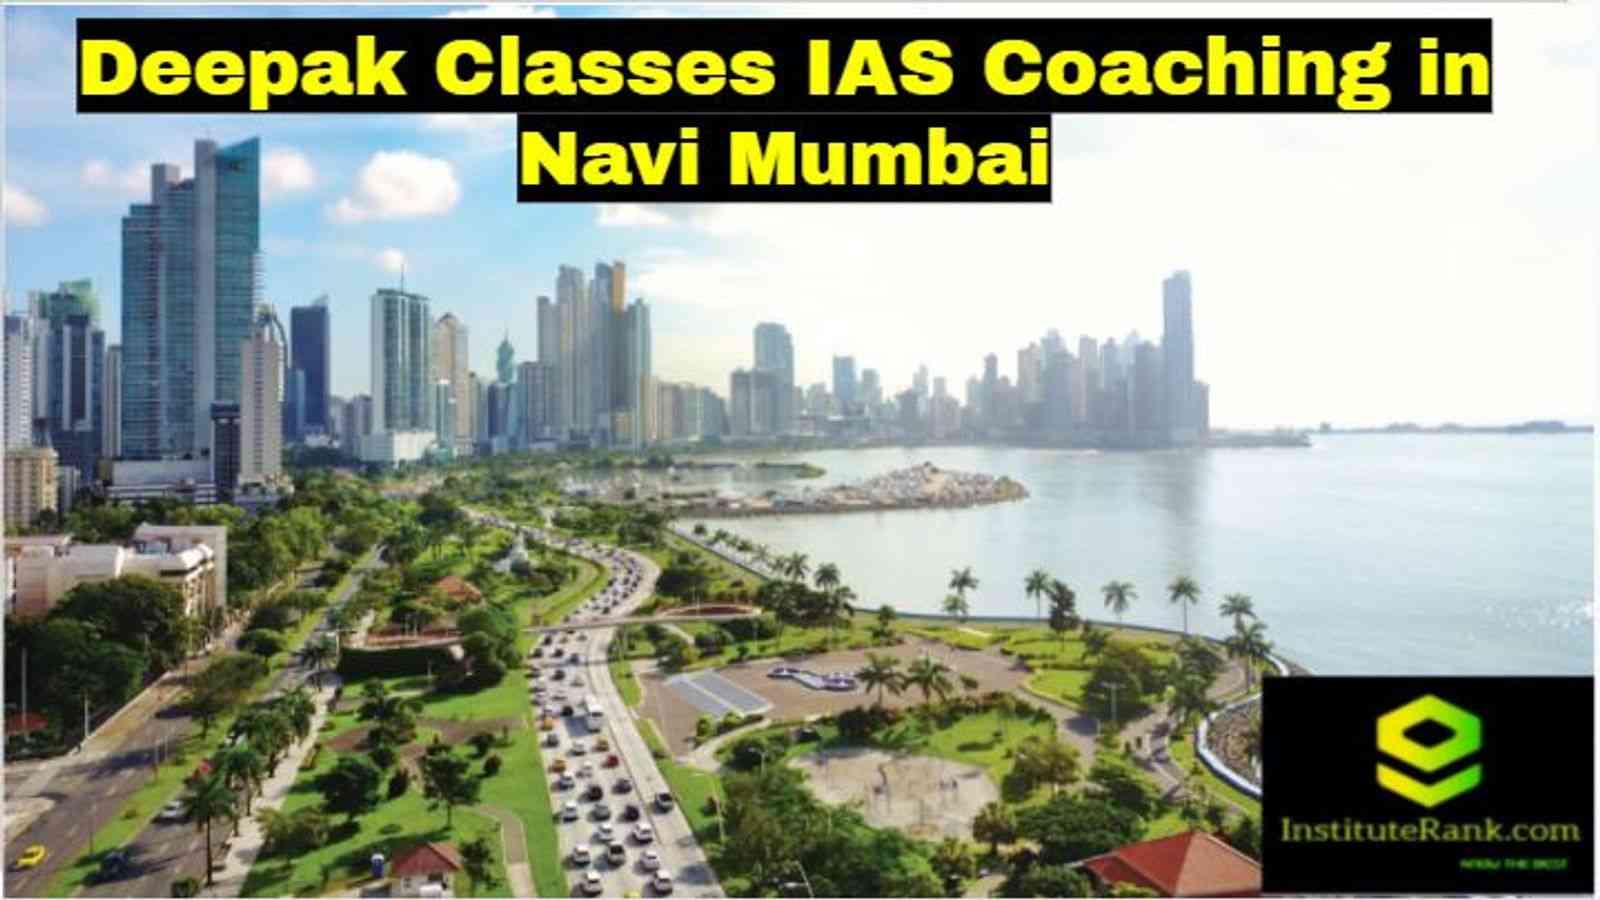 Deepak Classes IAS Coaching in Navi Mumbai